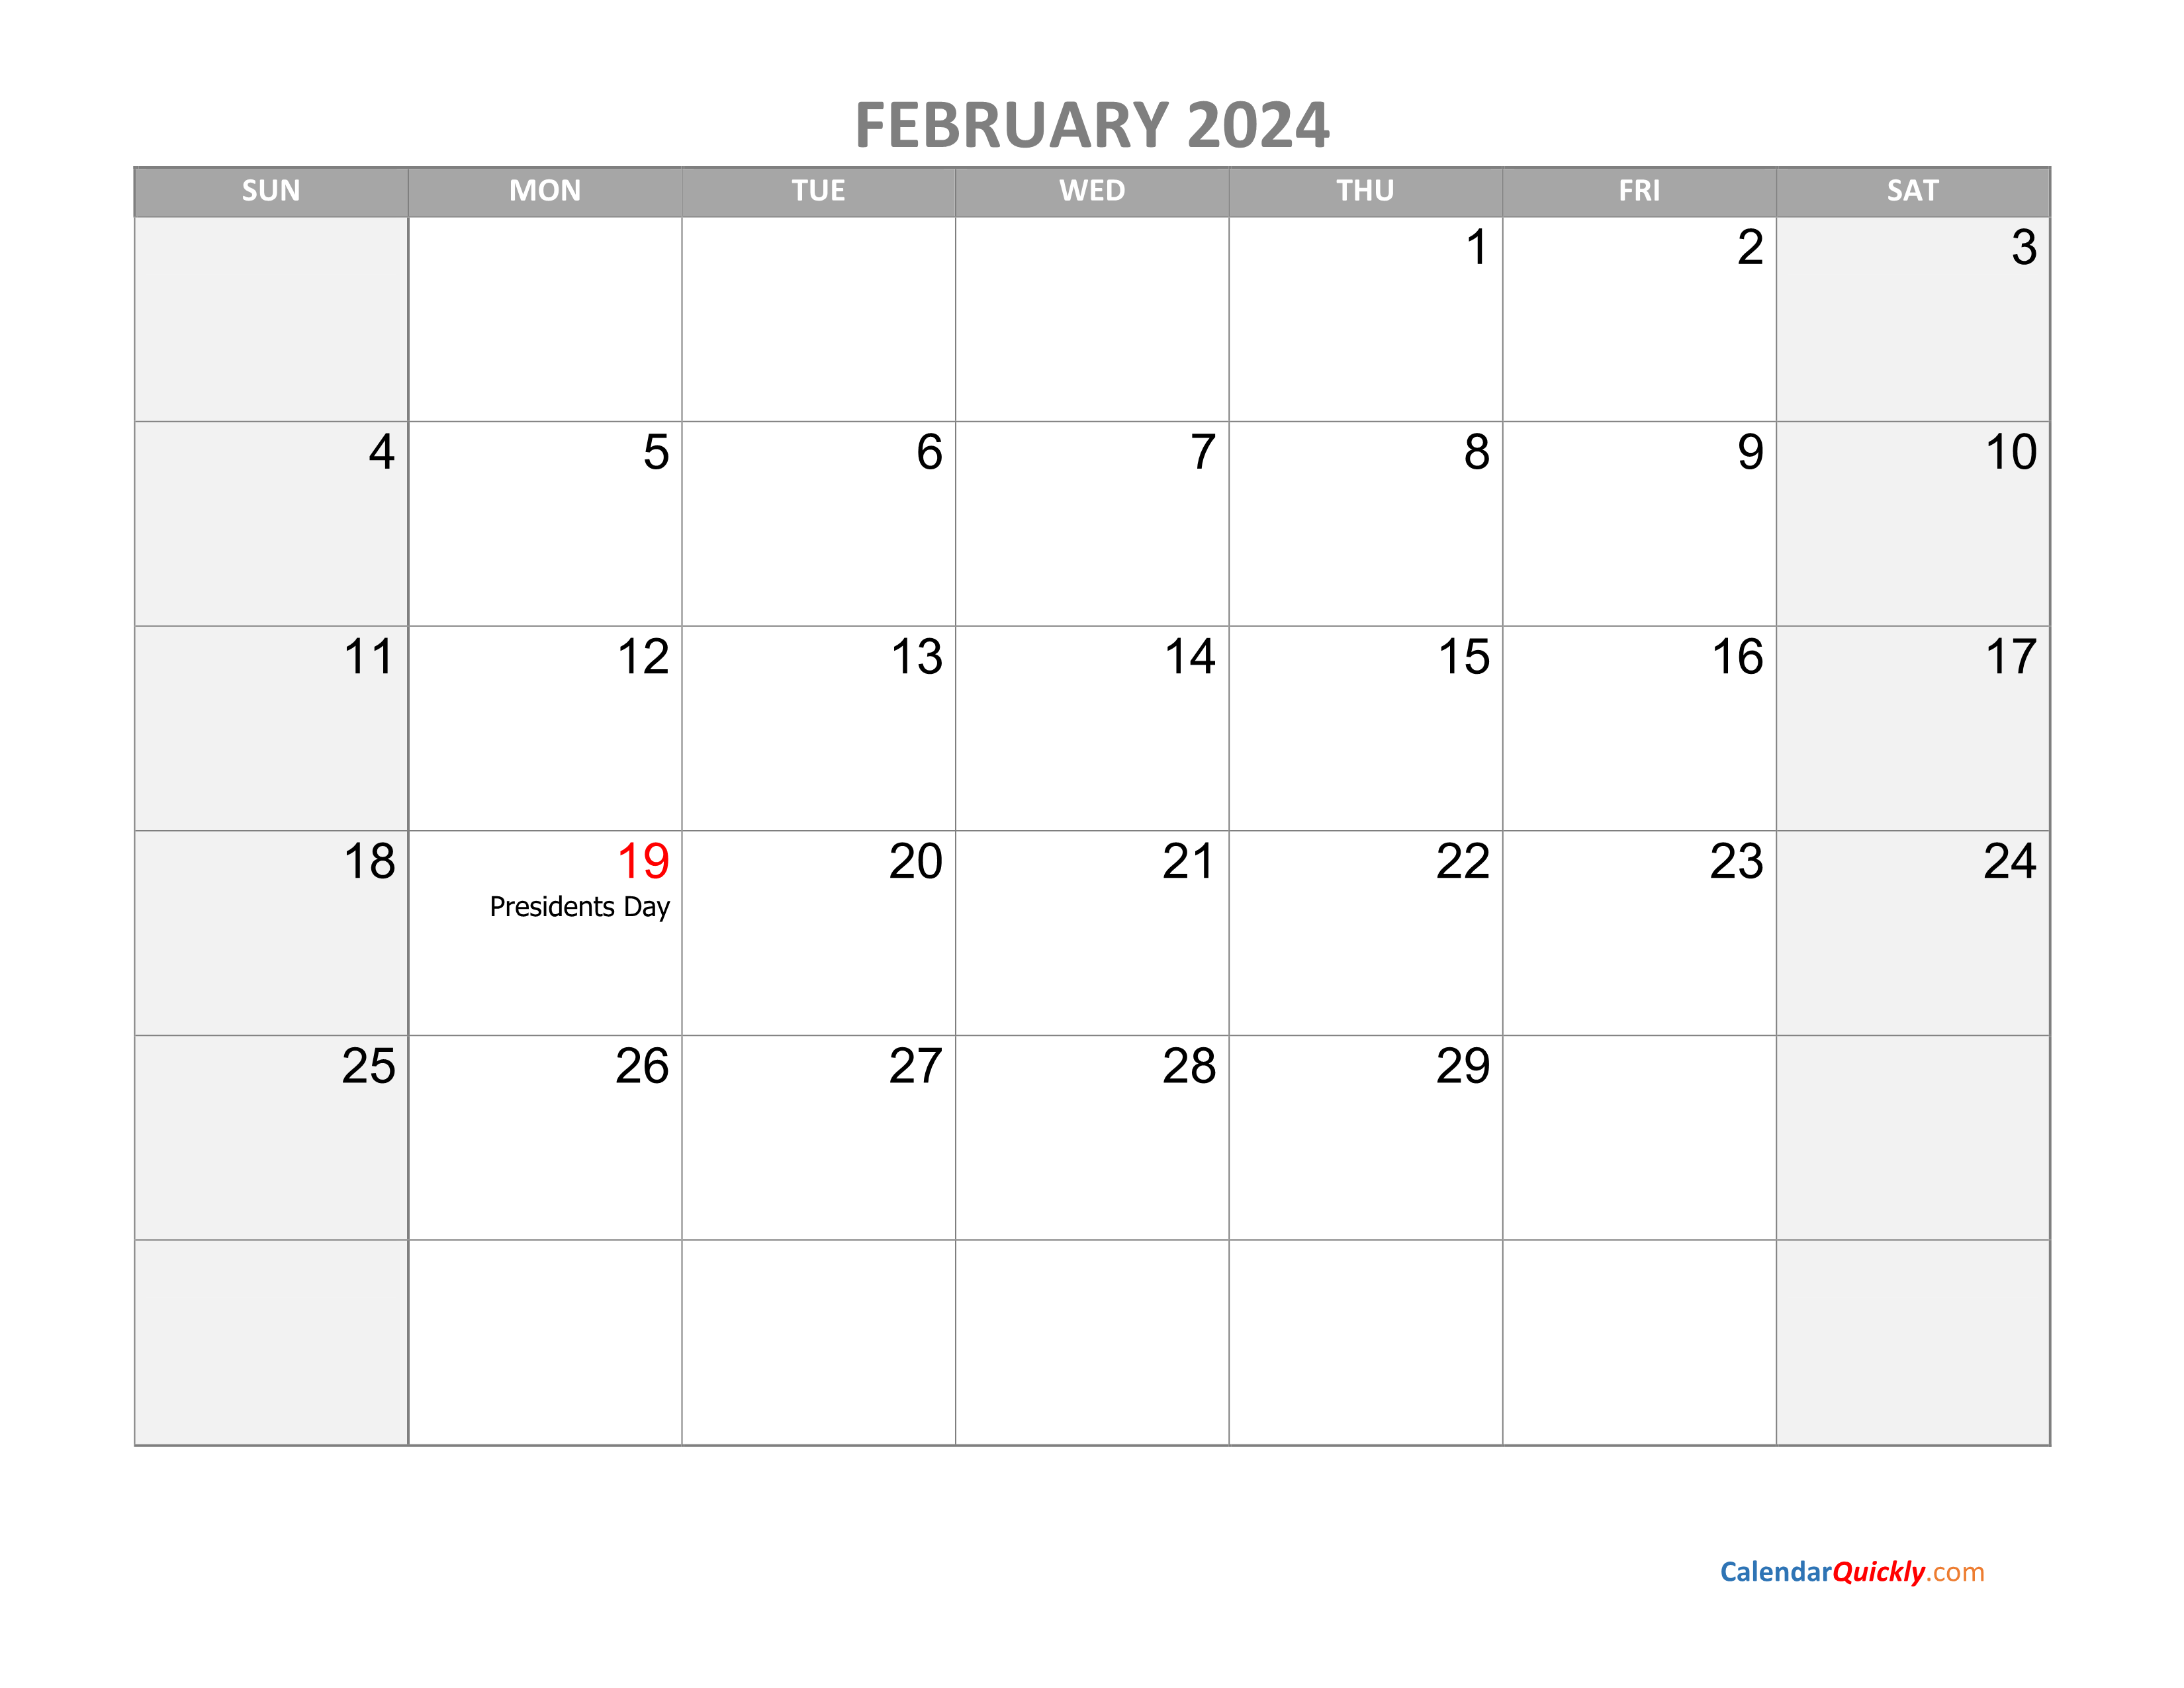 February Calendar 2024 with Holidays Calendar Quickly